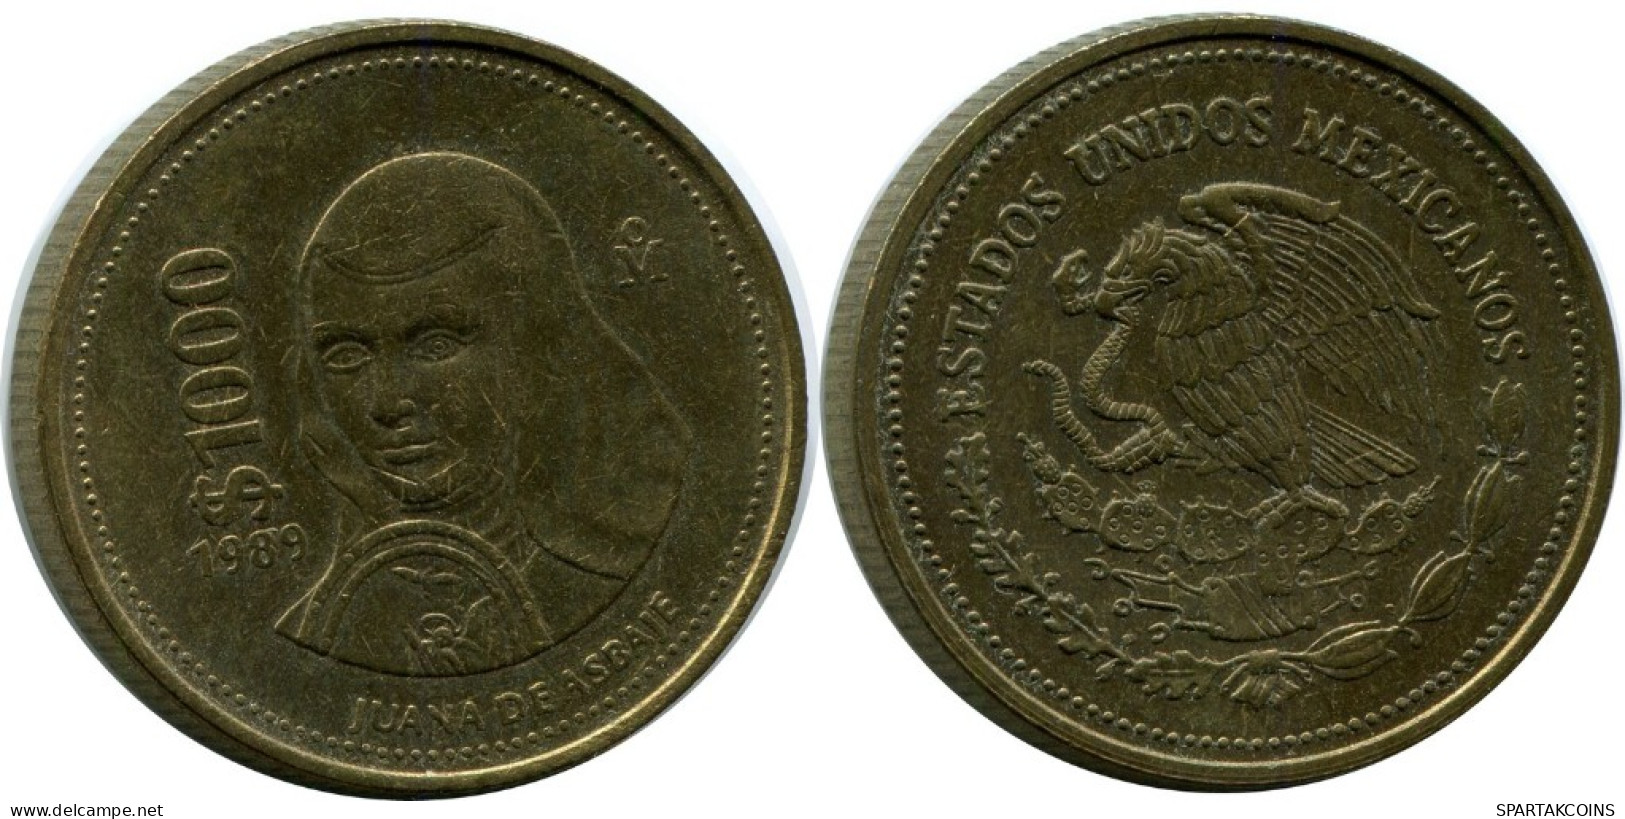 1000 PESOS 1989 MEXICO Coin #AH537.5.U.A - Mexico